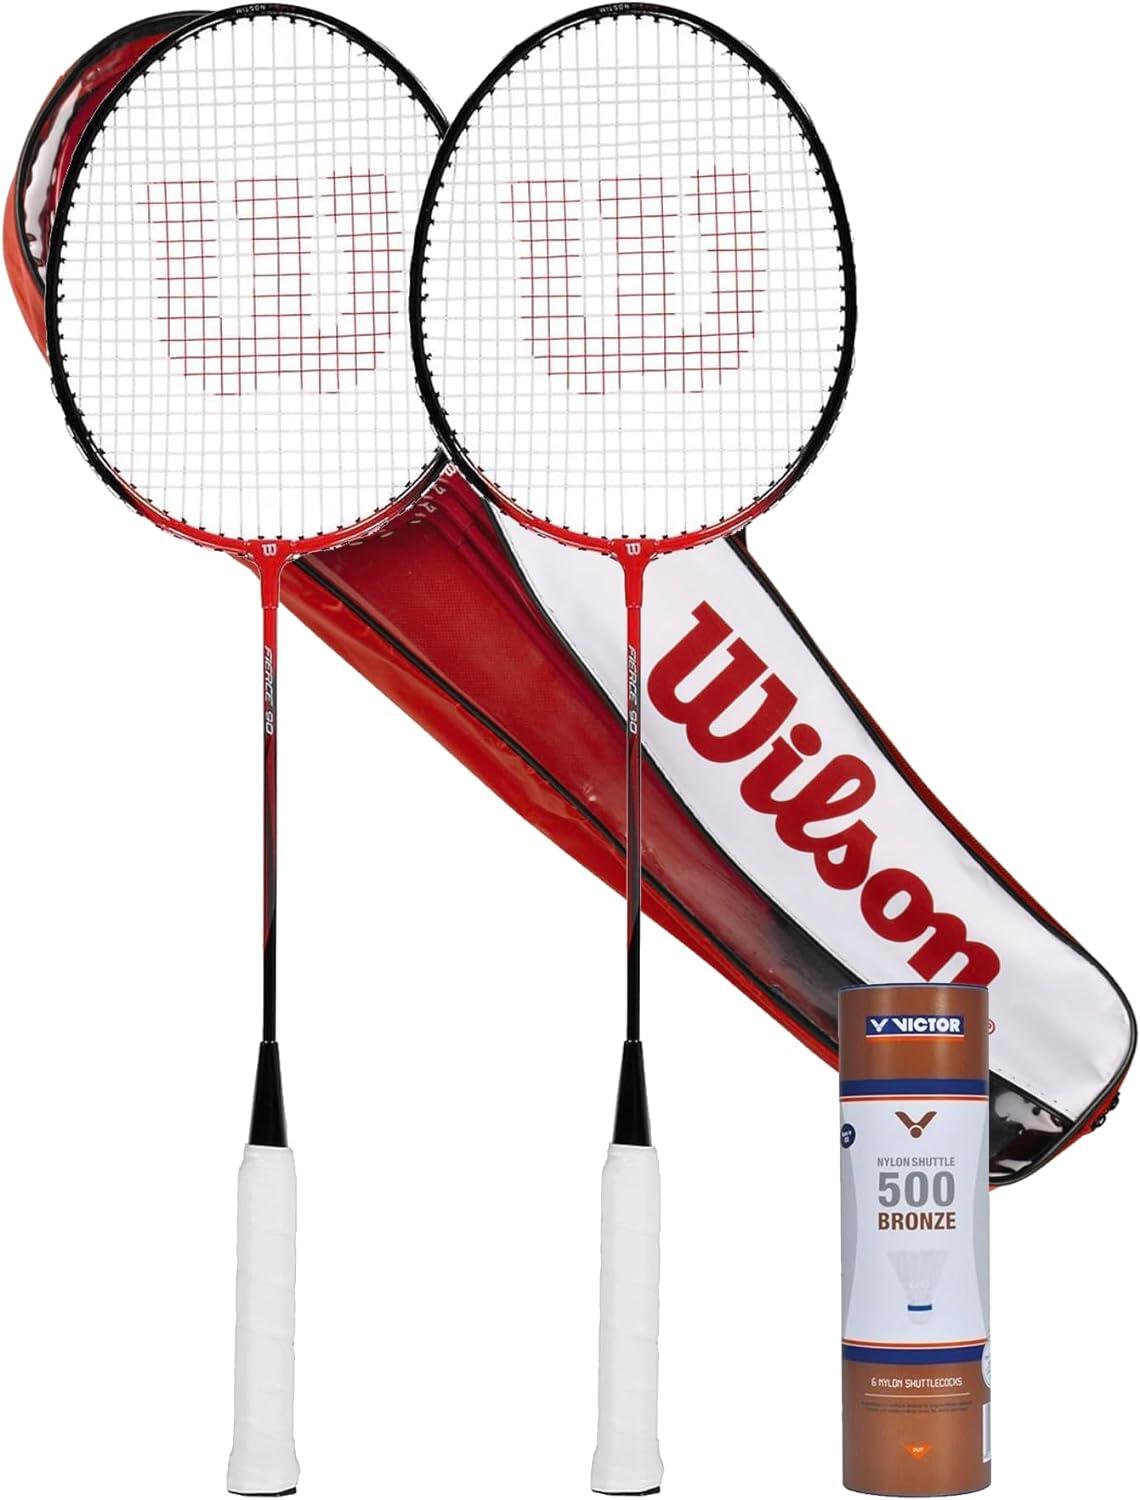 WILSON Wilson Fierce Red Adult Twin Badminton Racket, Victor Shuttlecocks & Carry Case